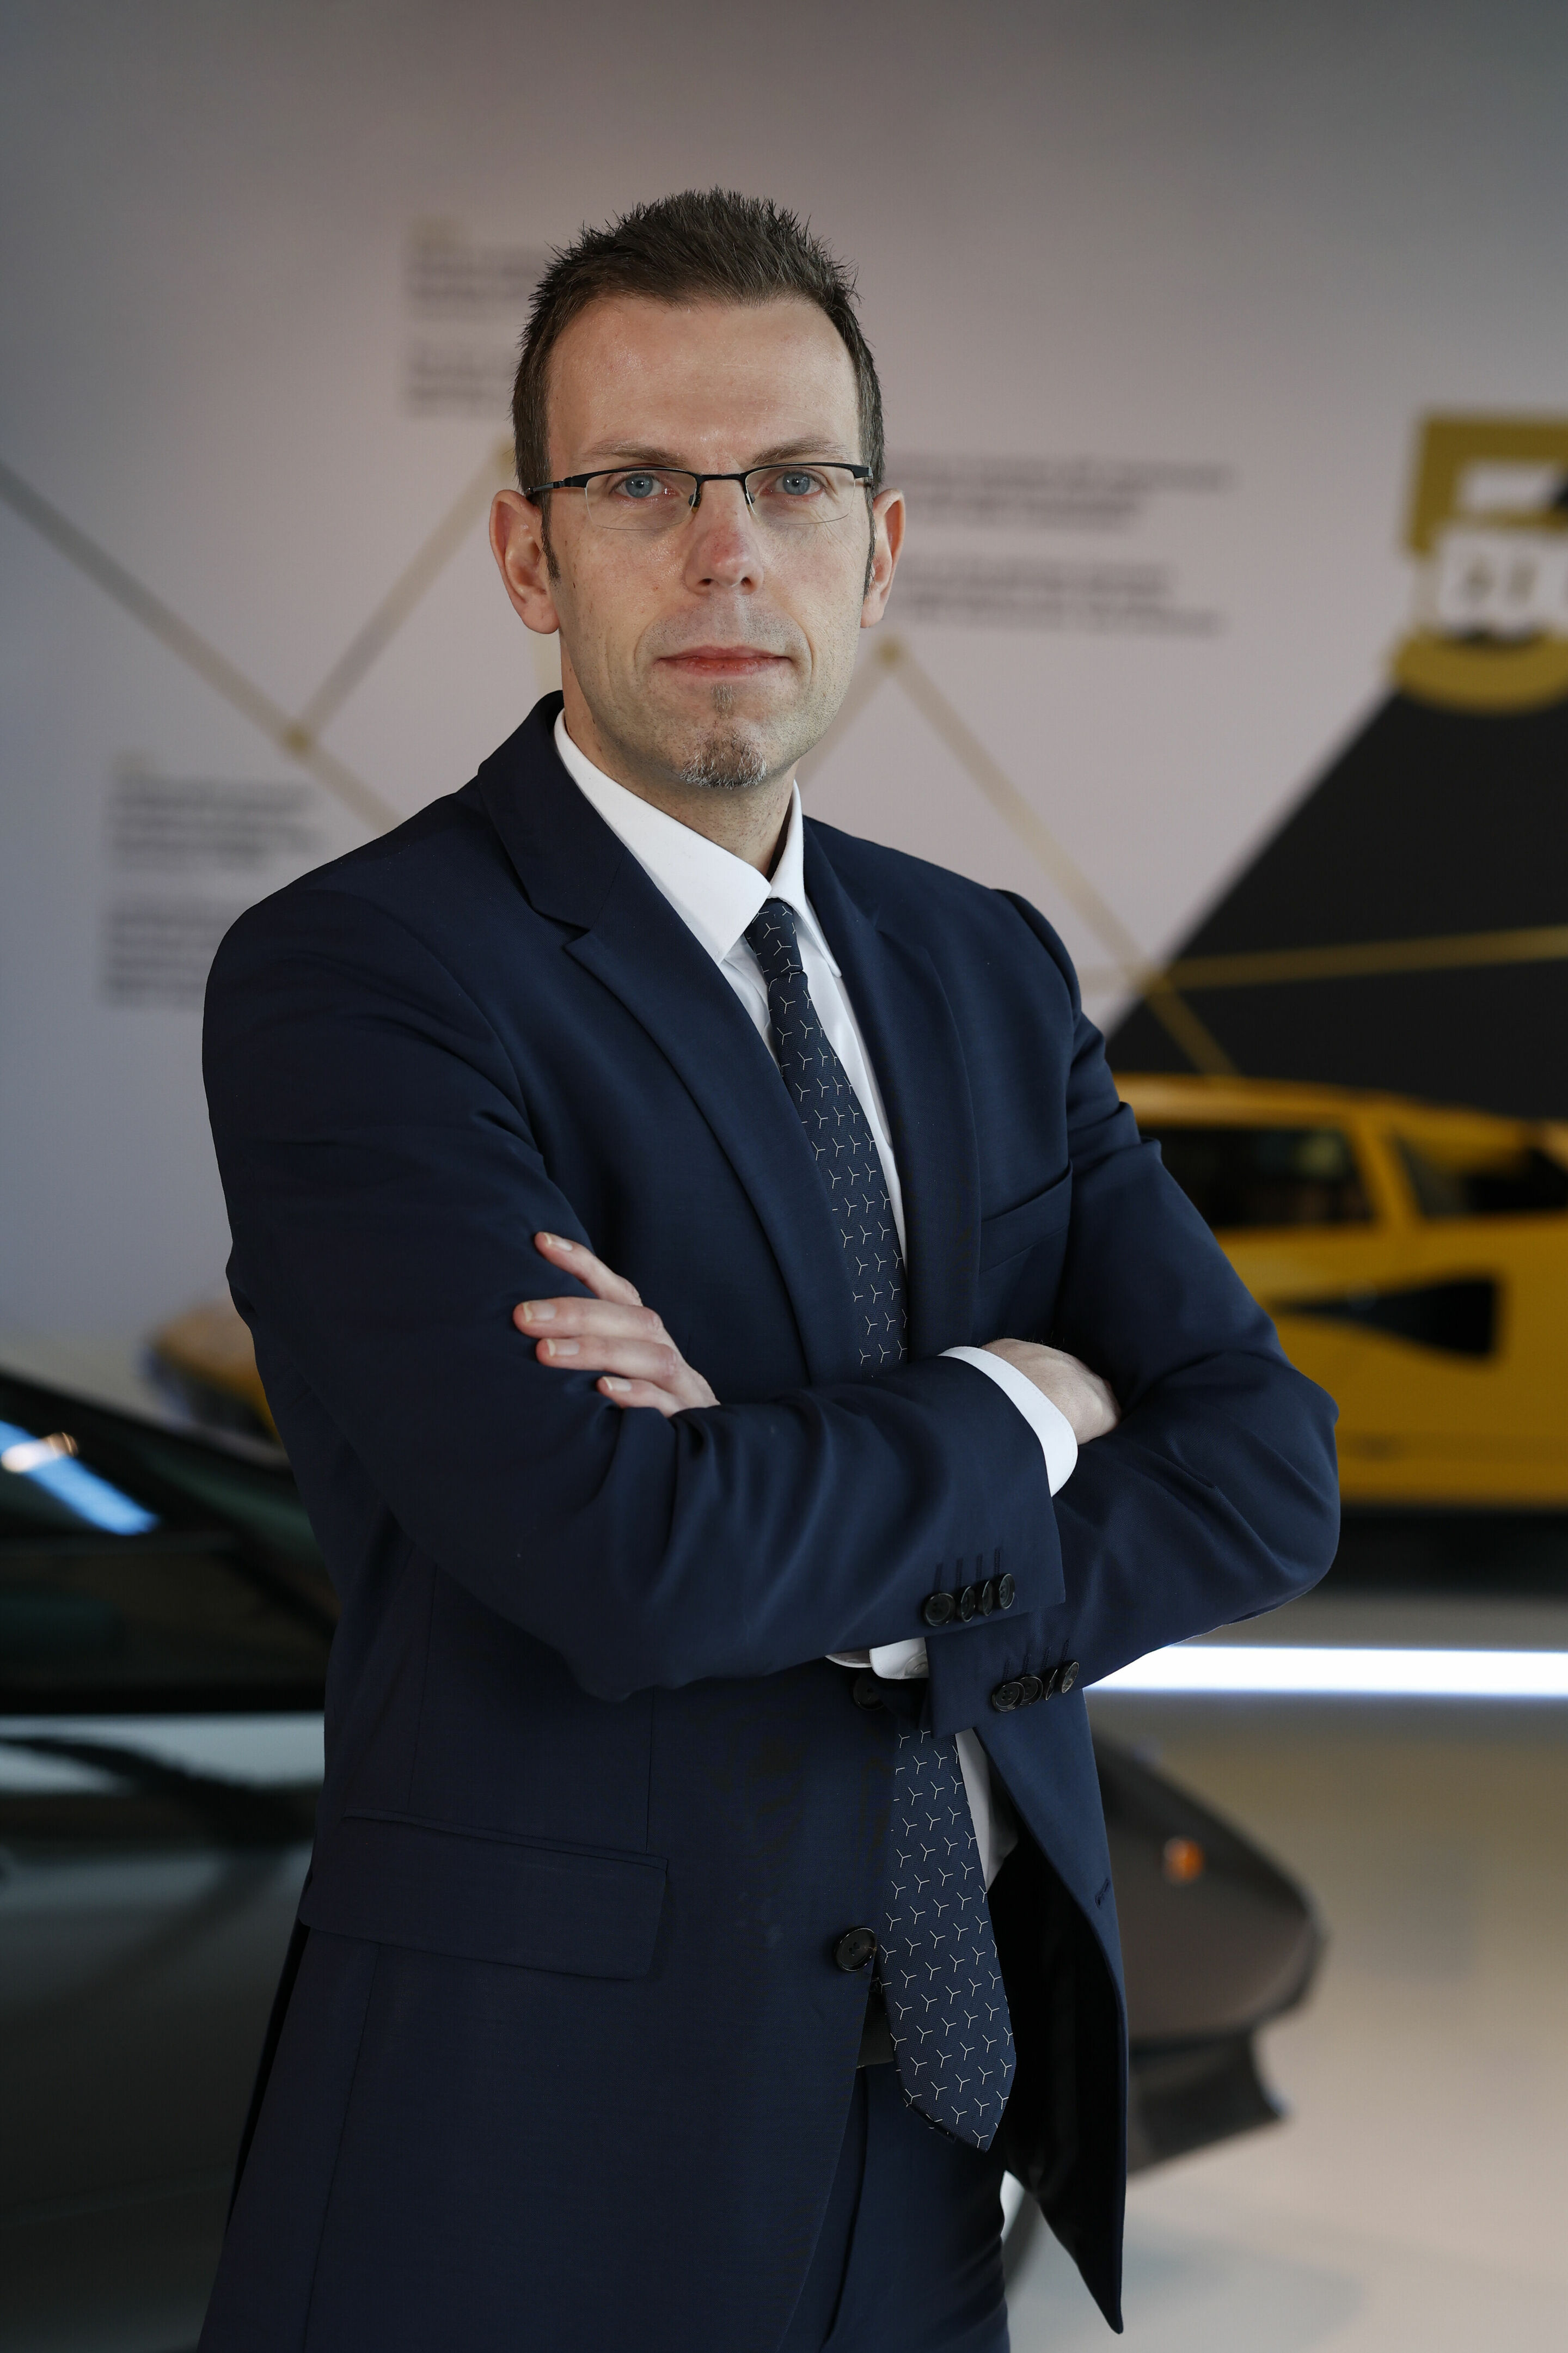 Lamborghini: Organisatorischer Wechsel in der F&E-Abteilung